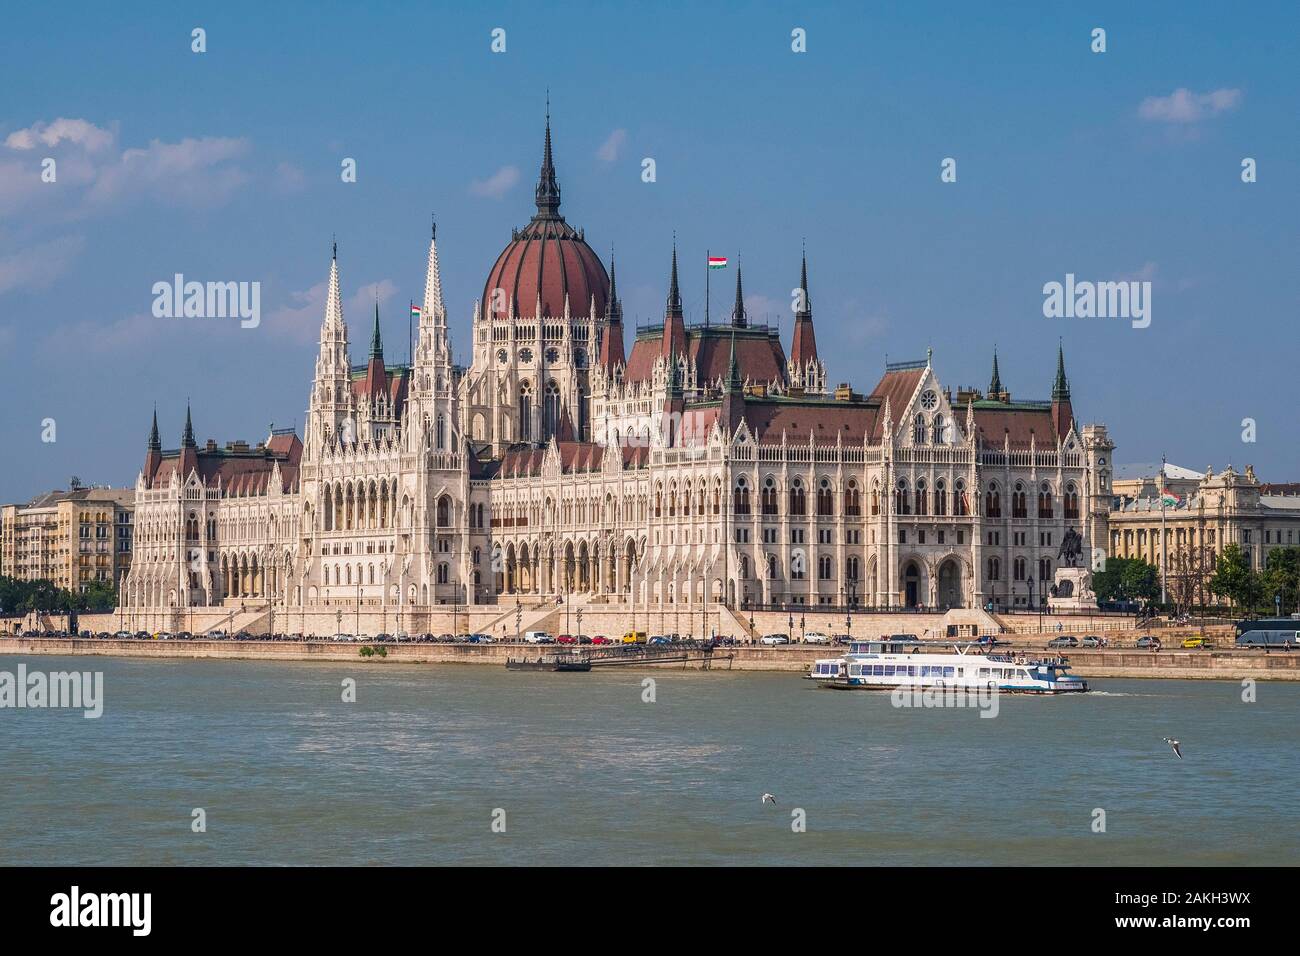 Ungarn, Budapest, UNESCO-Weltkulturerbe, Pest, das ungarische Parlament, großen neugotischen Stil Gebäude aus dem frühen 20. Jahrhundert, Sitz der Nationalversammlung von Ungarn. Stockfoto